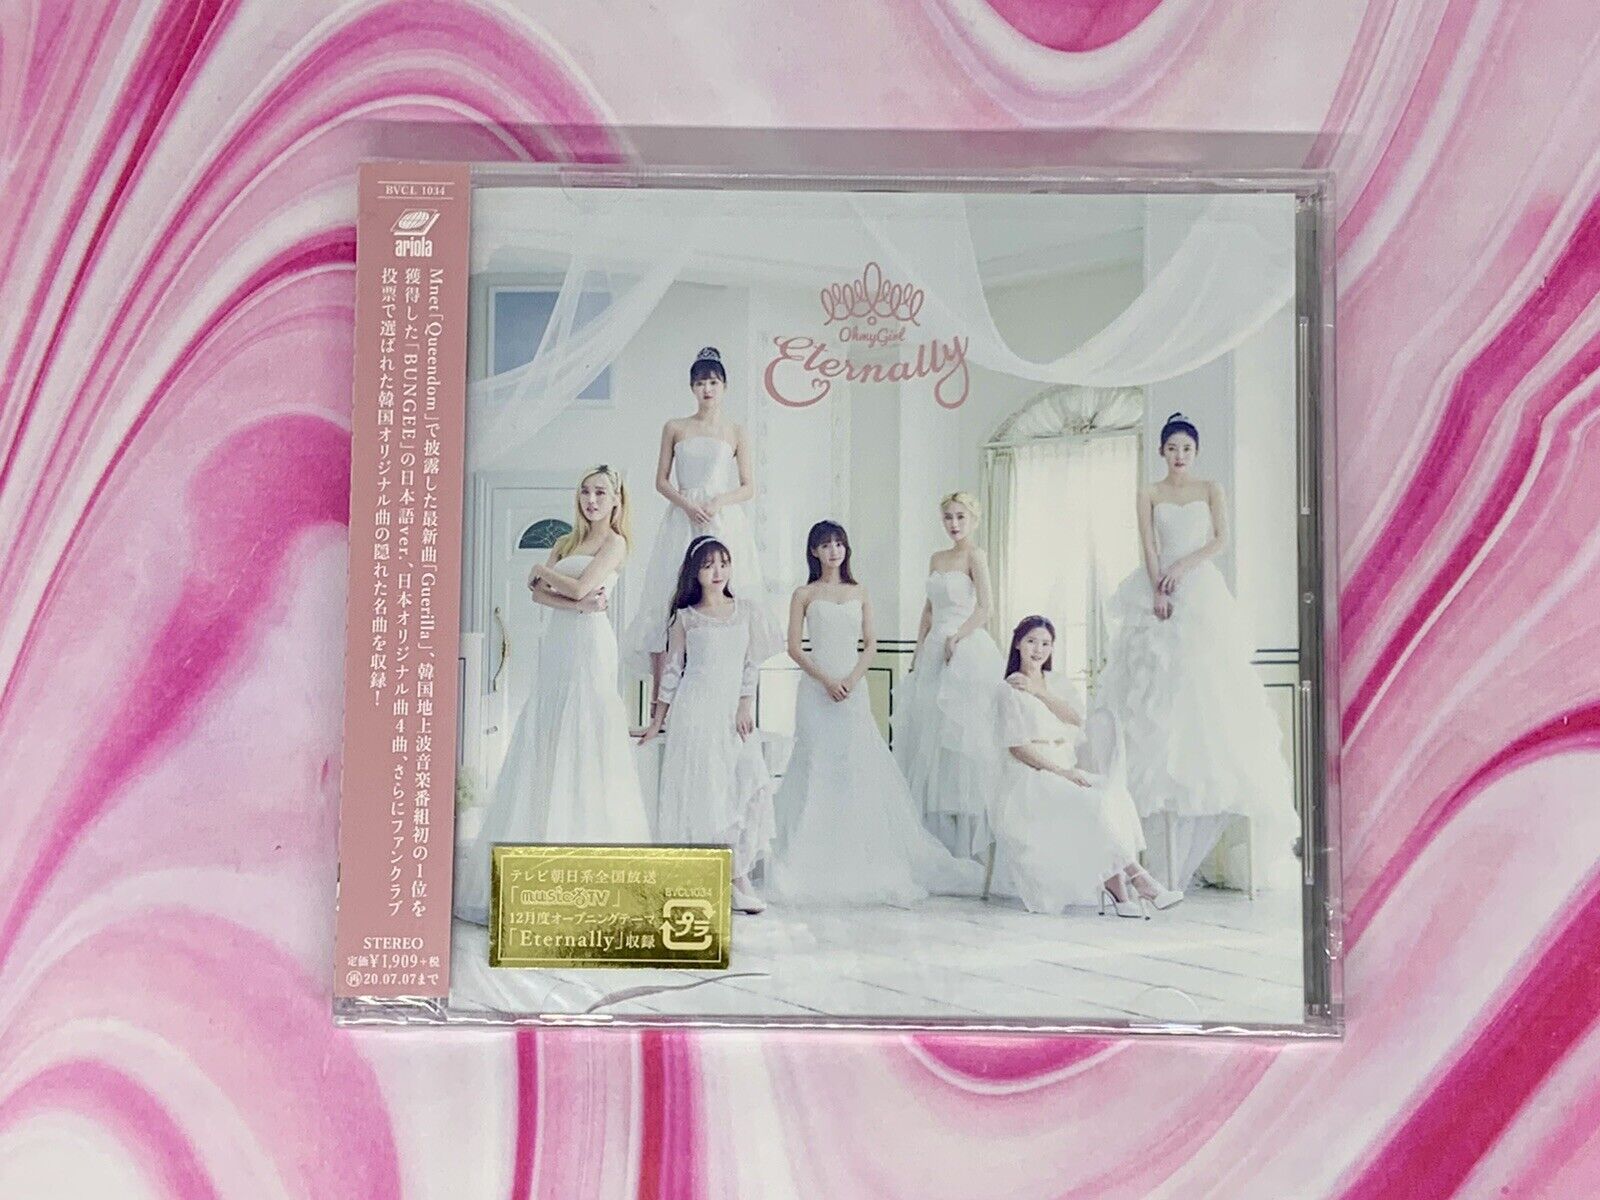 Oh My Girl Eternally 3rd Japanese Album CD - Brand New, Unopened